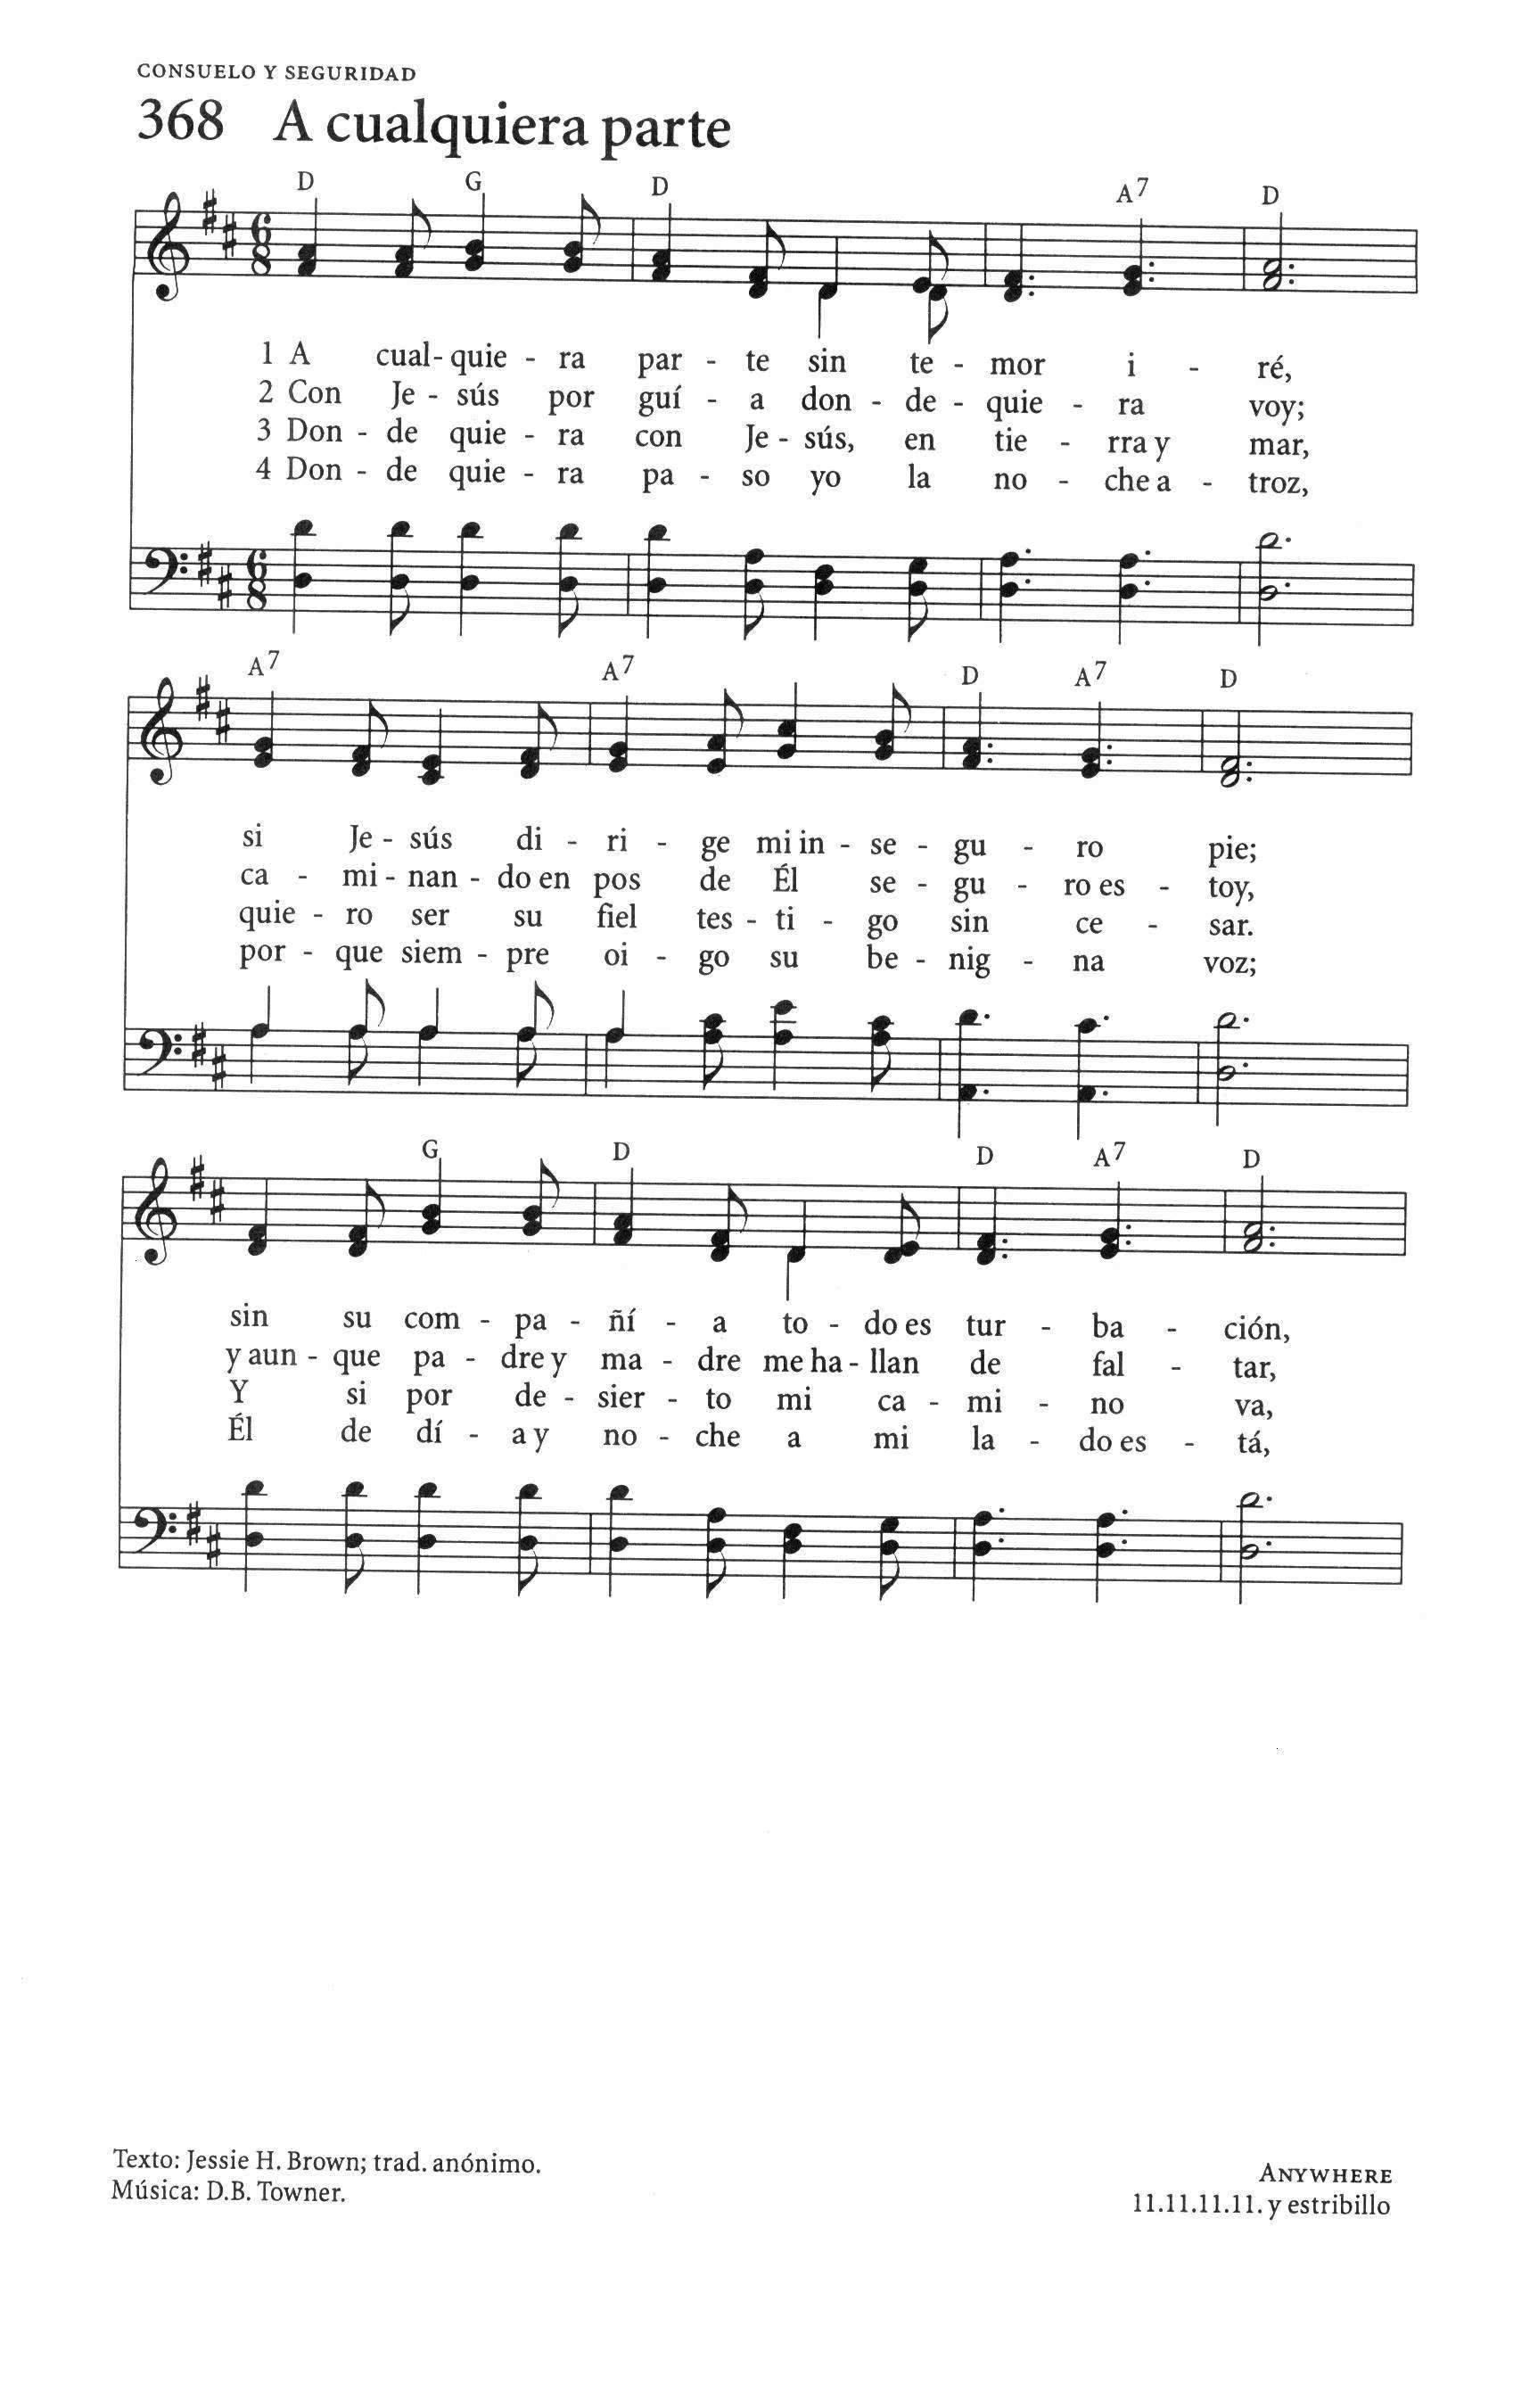 El Himnario page 492